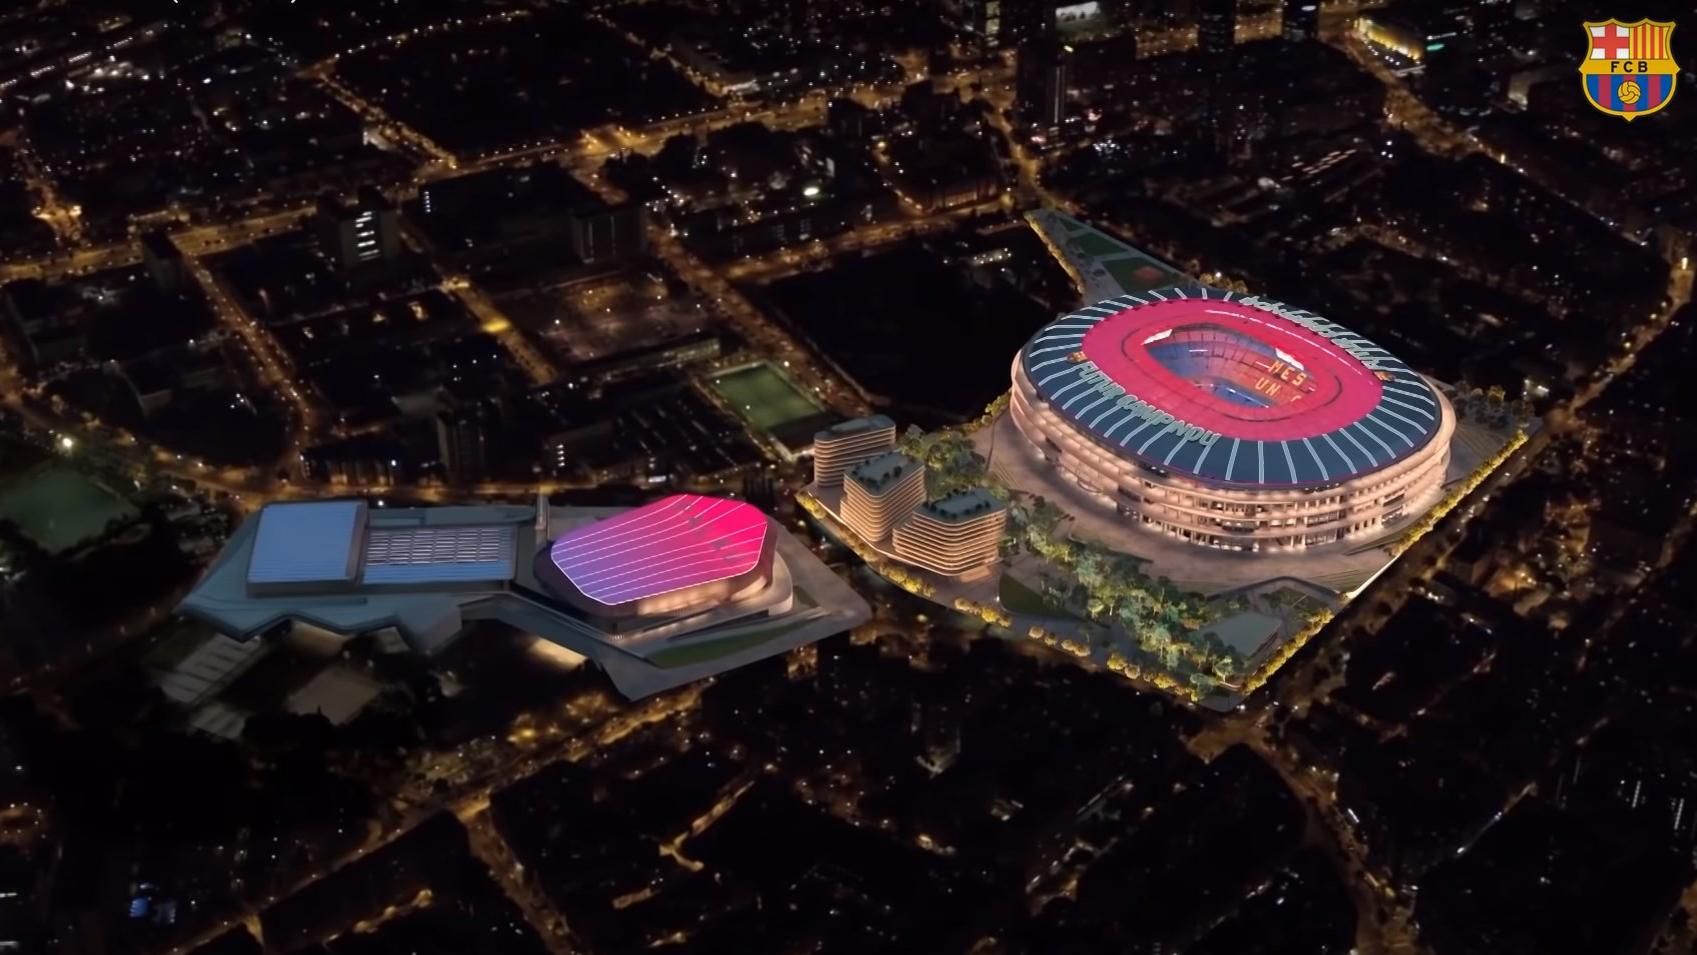 Барселона представила проект реконструкции стадиона "Камп Ноу" на 1,5 миллиарда евро: видео